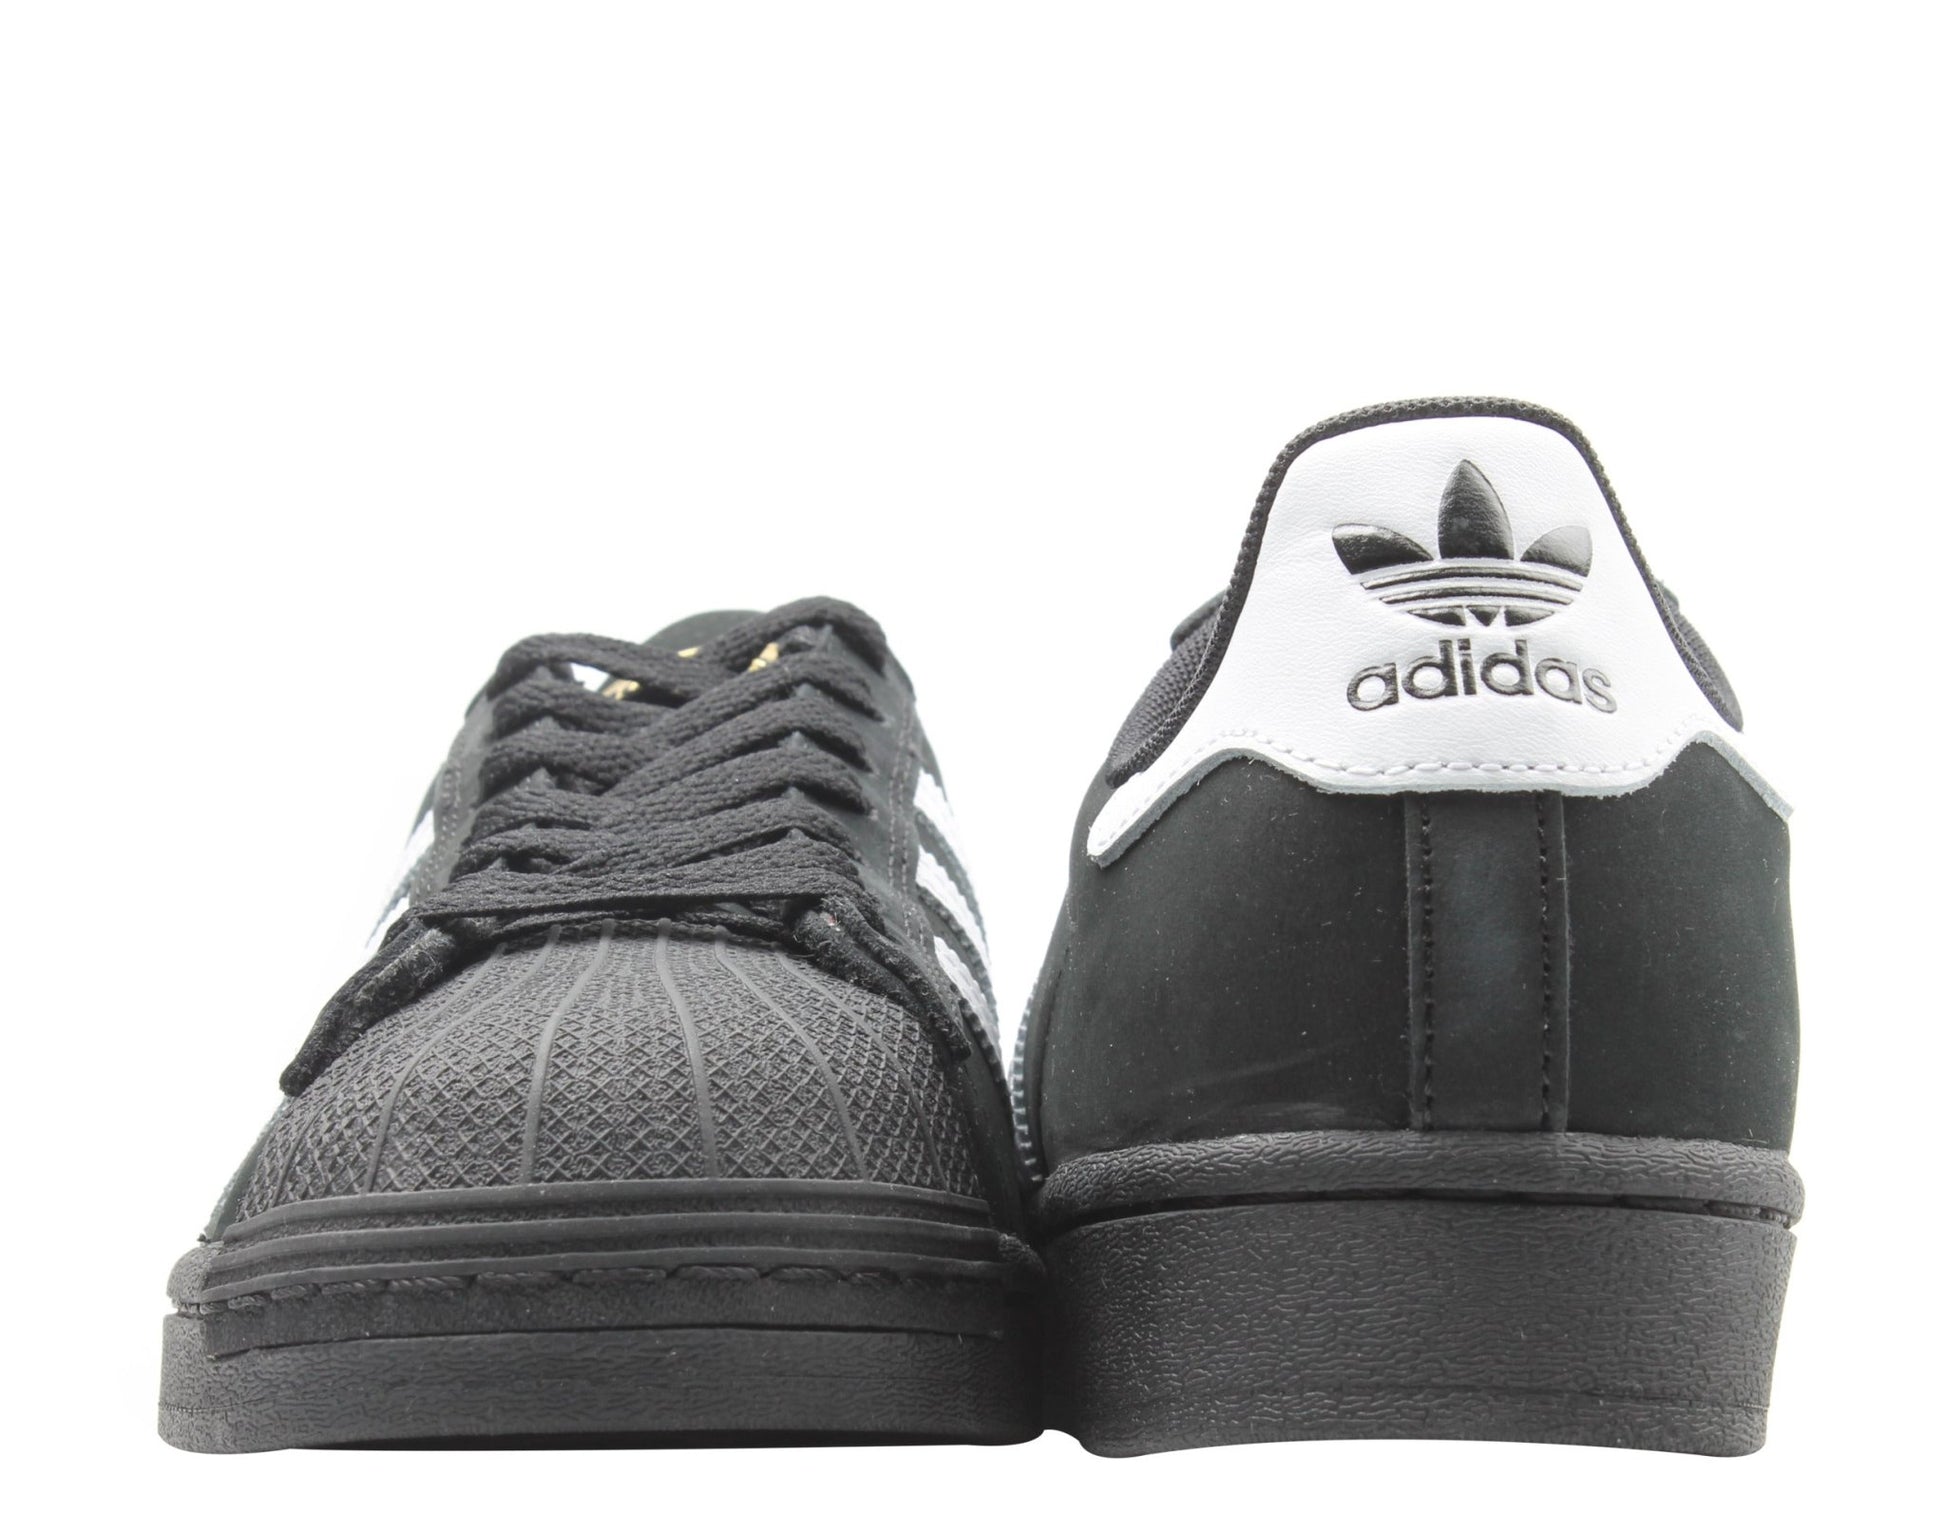 Adidas Originals Superstar ADV Black/White/Gold Men's Basketball Shoes FV0321 - Becauze